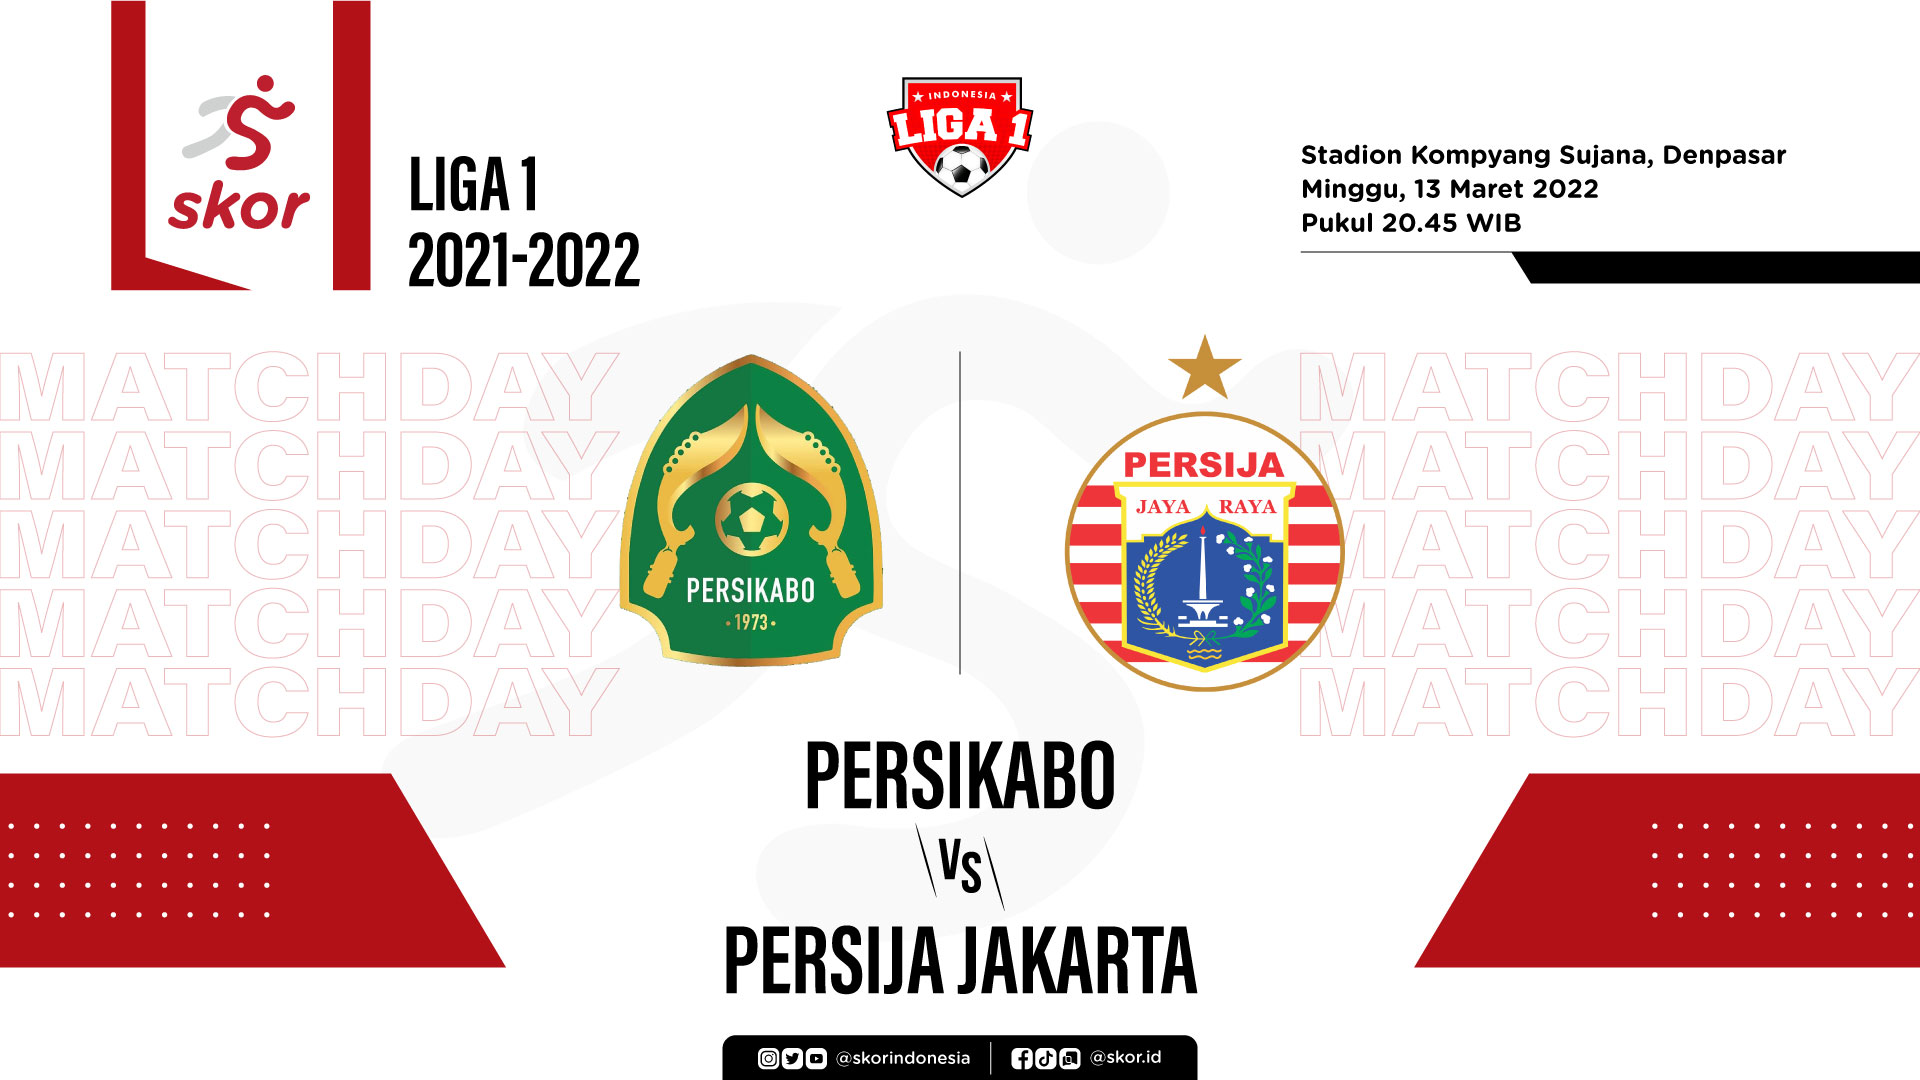 Persikabo vs Persija Jakarta: Prediksi dan Link Live Streaming